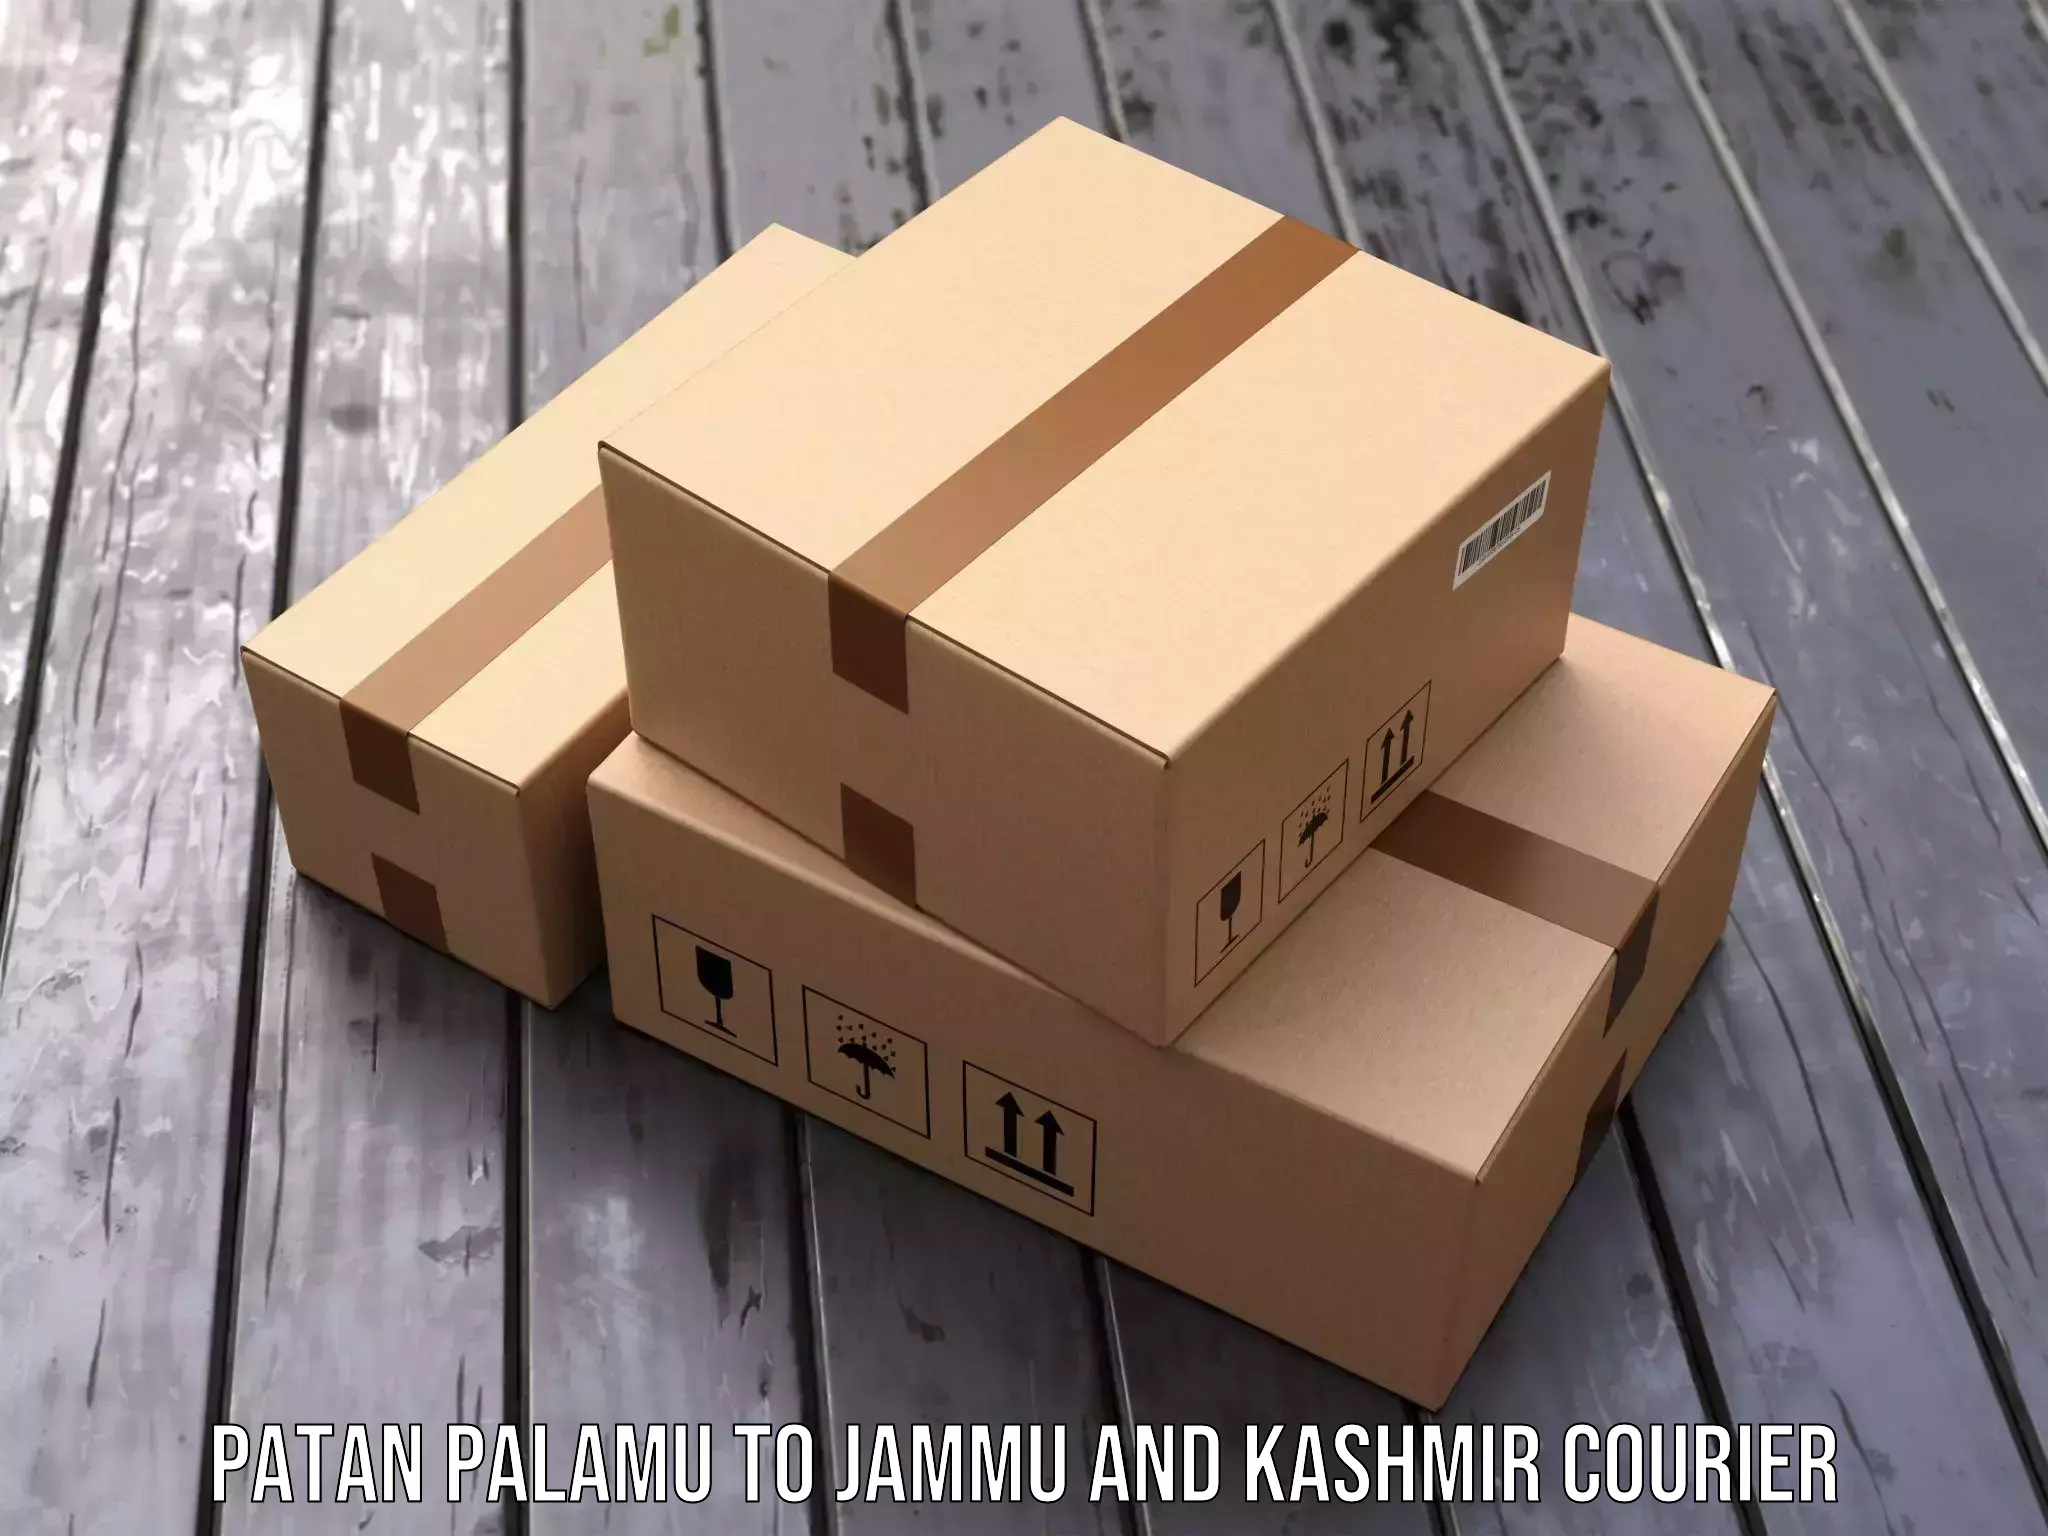 Express courier facilities Patan Palamu to Jammu